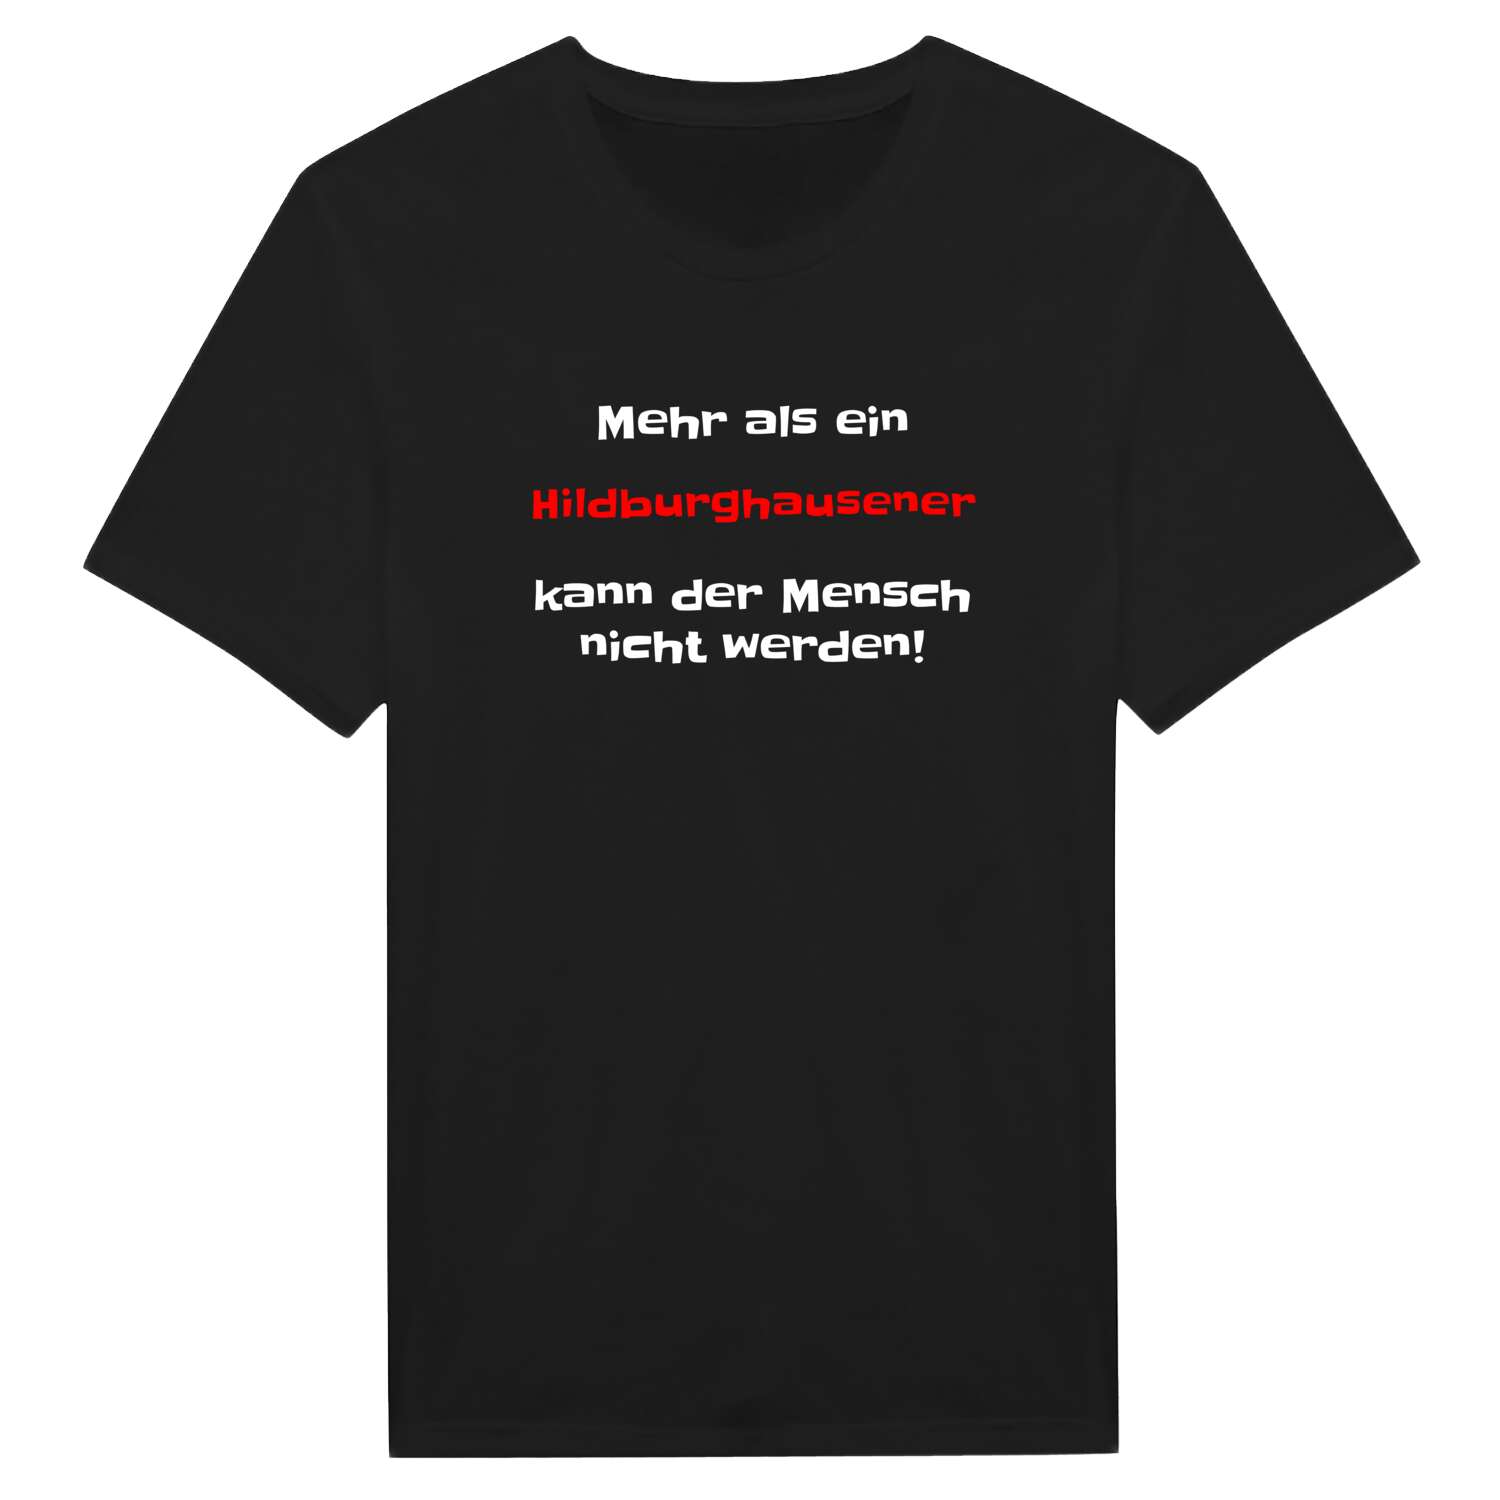 Hildburghausen T-Shirt »Mehr als ein«